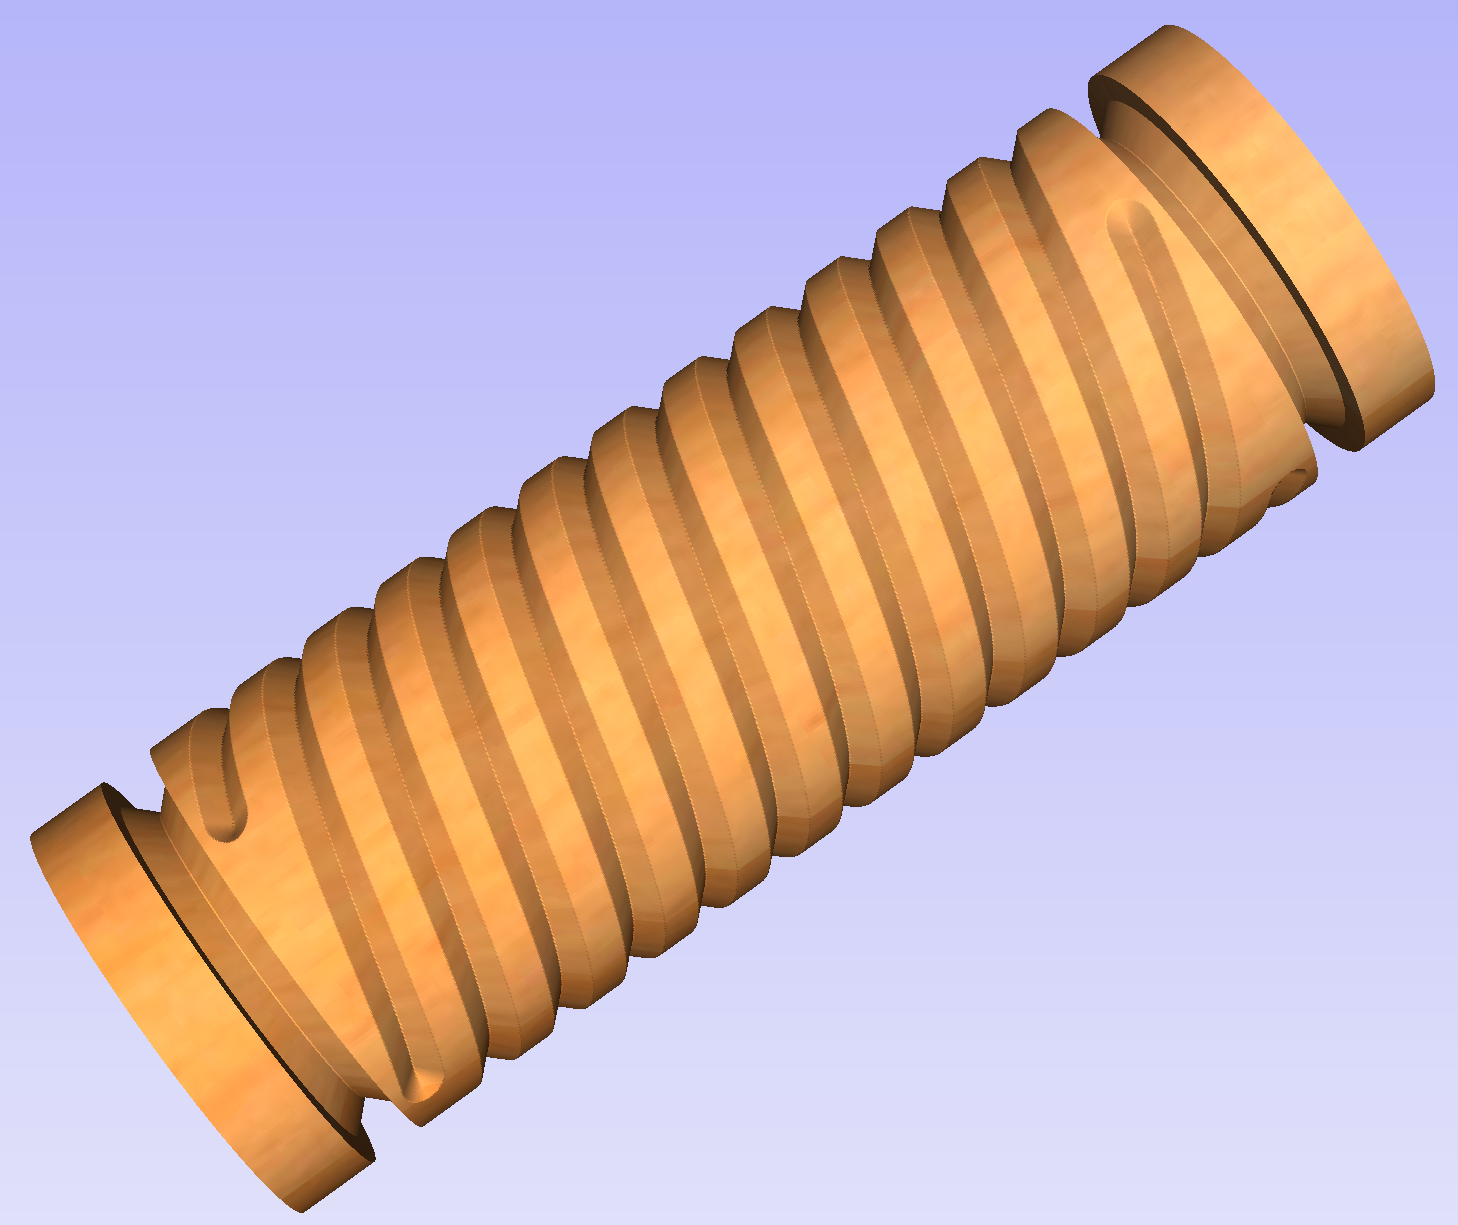 Finished column using spiral flutes